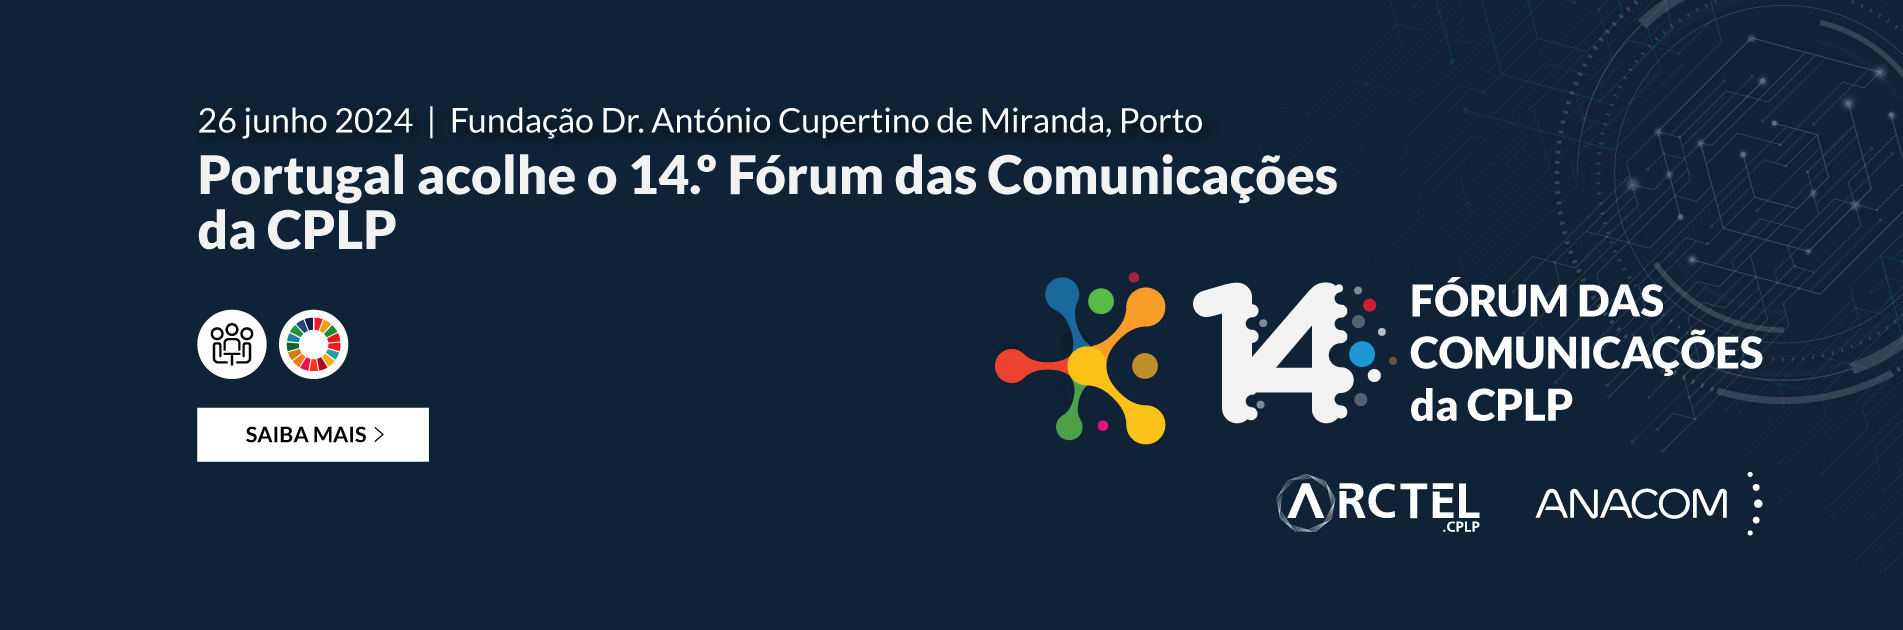 Evento organizado pela ANACOM e pela ARCTEL, decorre a 26.06.2024, no Porto.